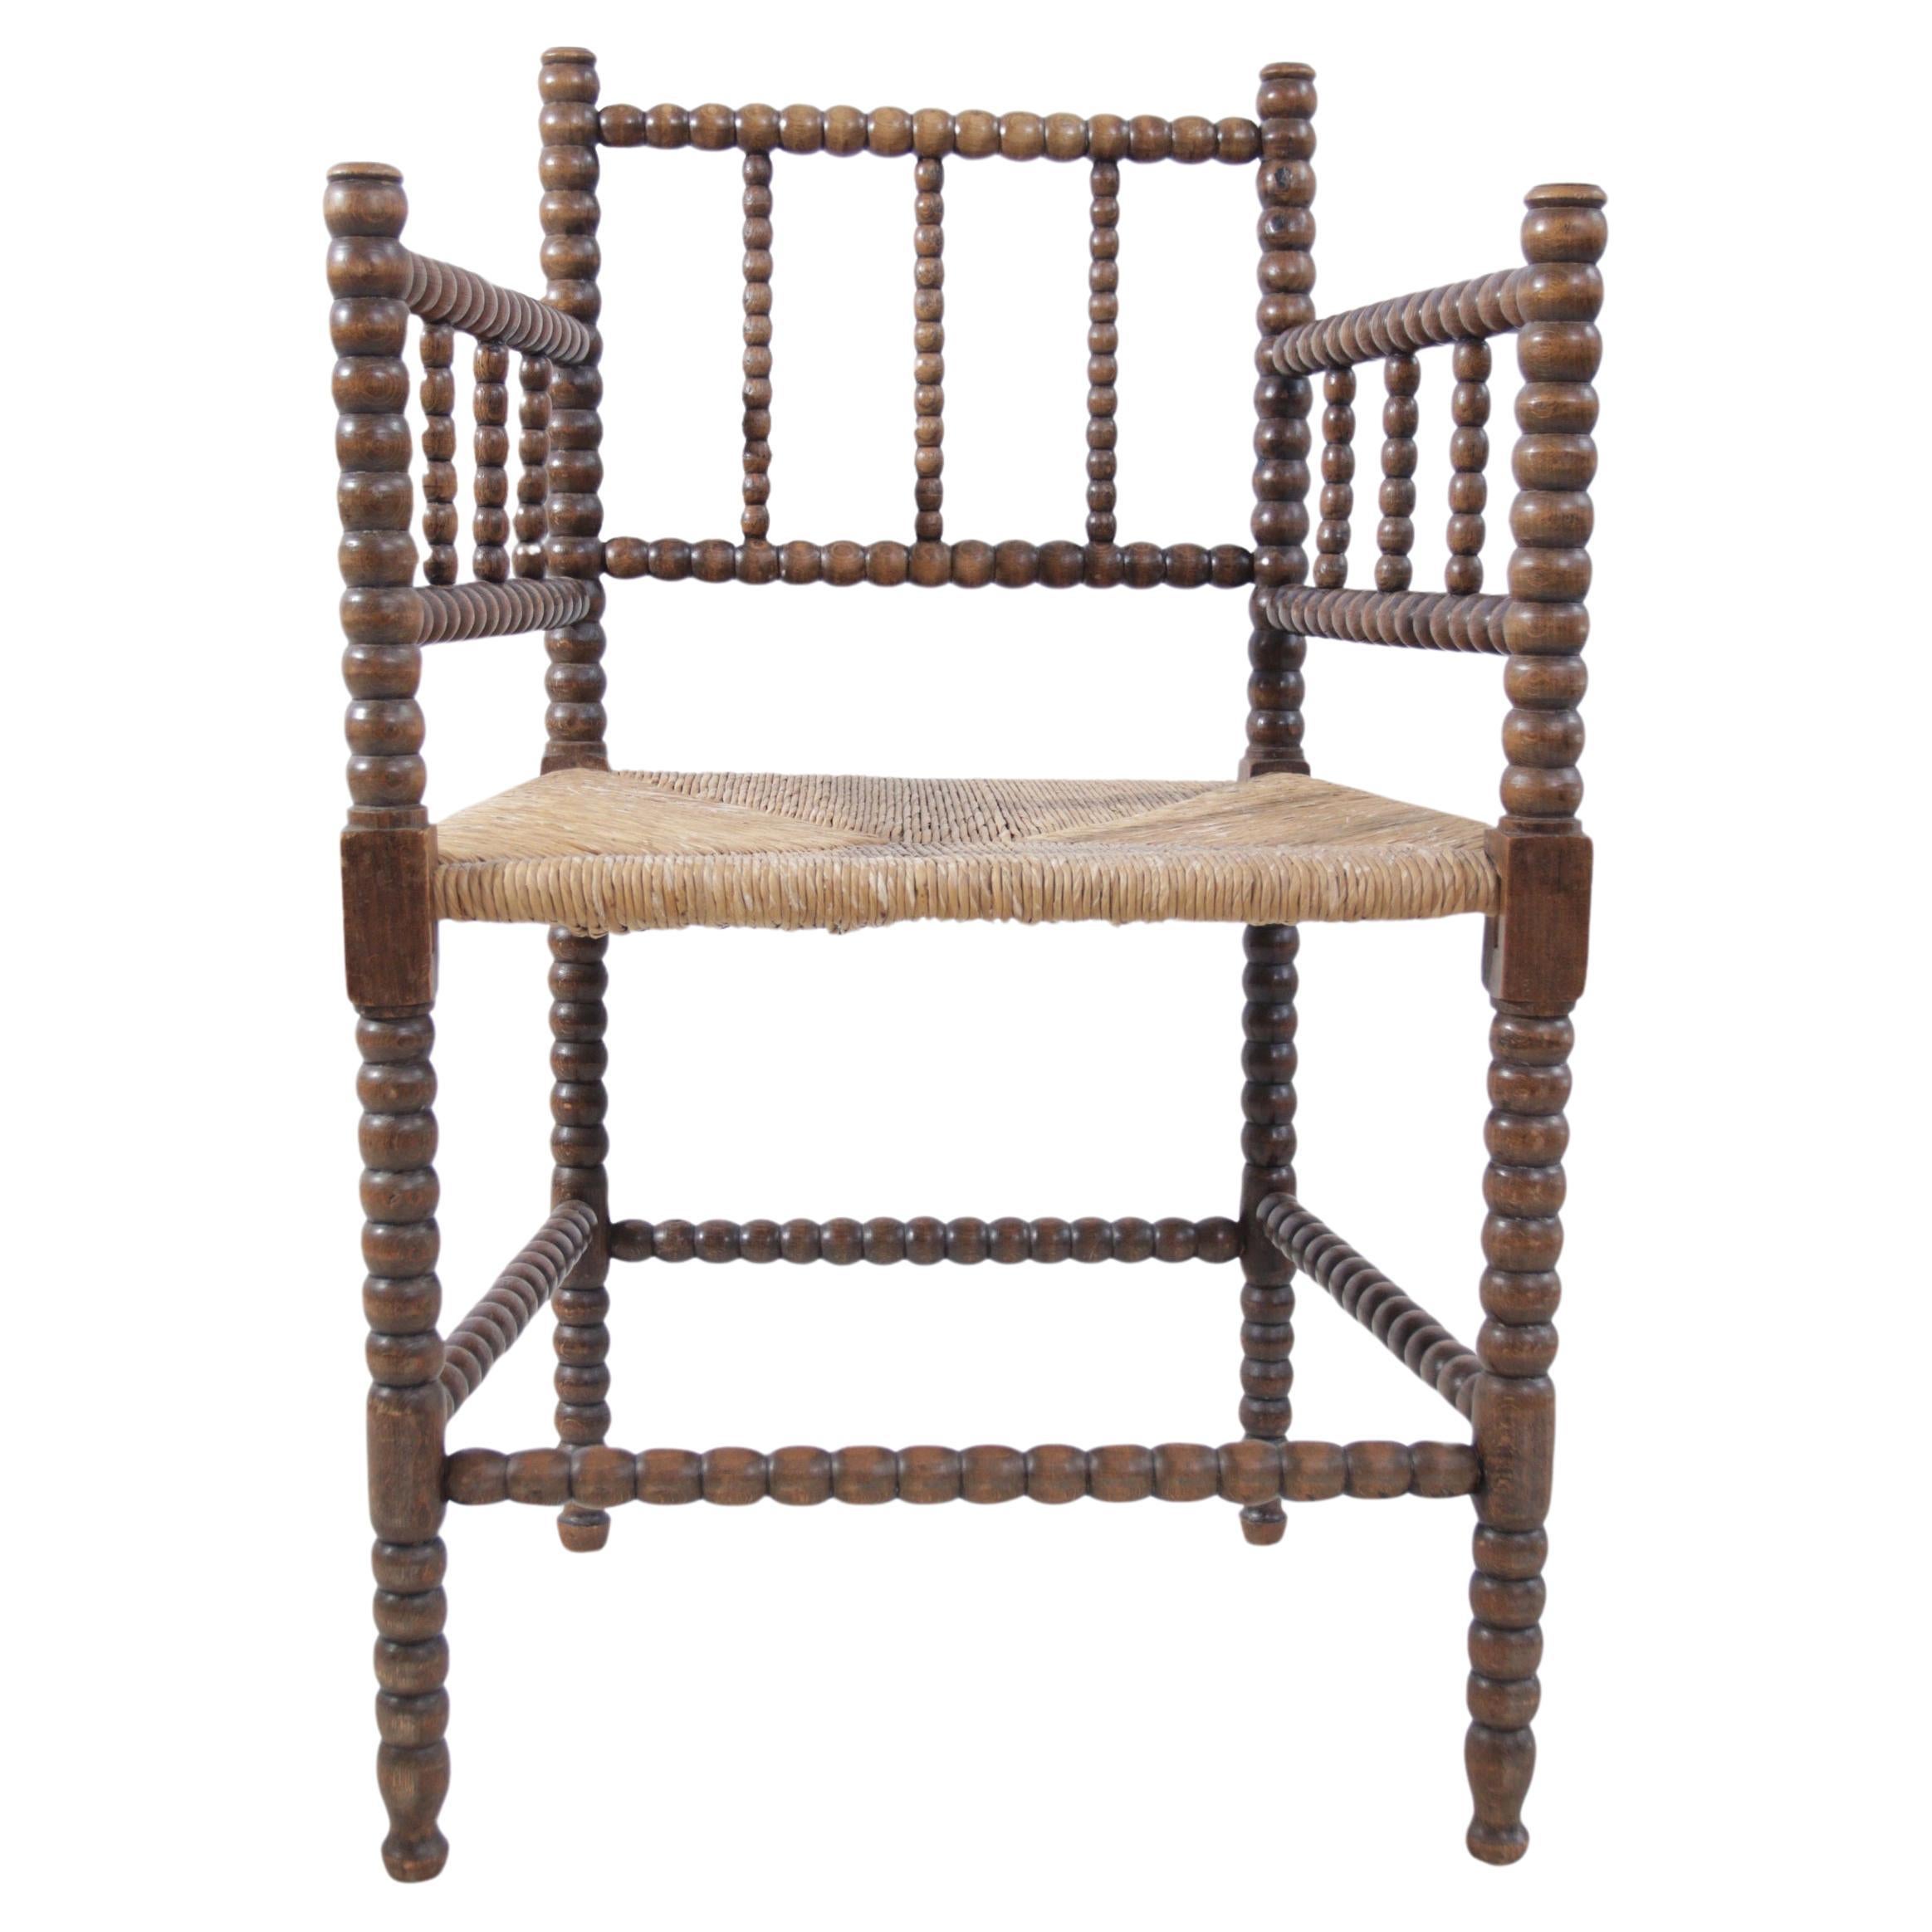 Cette chaise en chêne à fuseau de perles, belle représentation de l'artisanat néerlandais, fusionne la simplicité de la vie rurale avec la polyvalence du design. Originaire des Pays-Bas, il témoigne de la qualité durable du chêne local, un bois